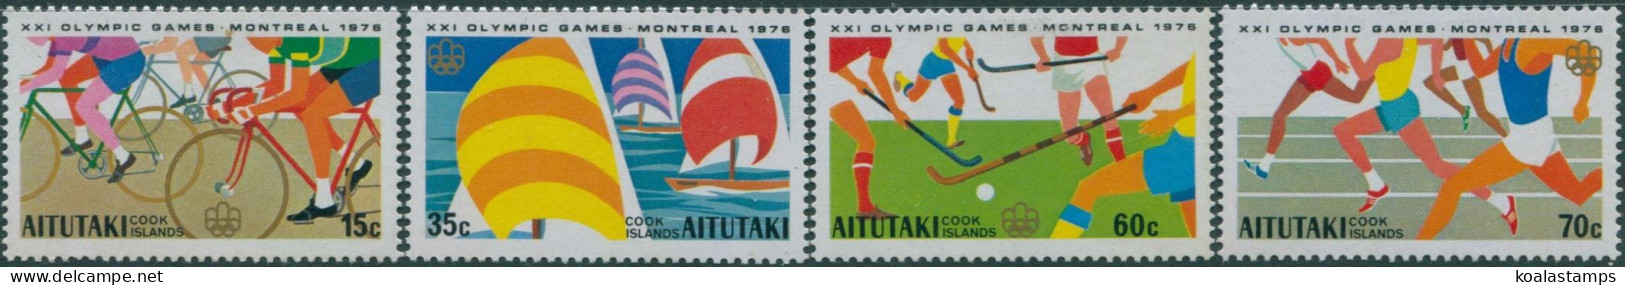 Aitutaki 1976 SG190-193 Olympics Set MNH - Cook